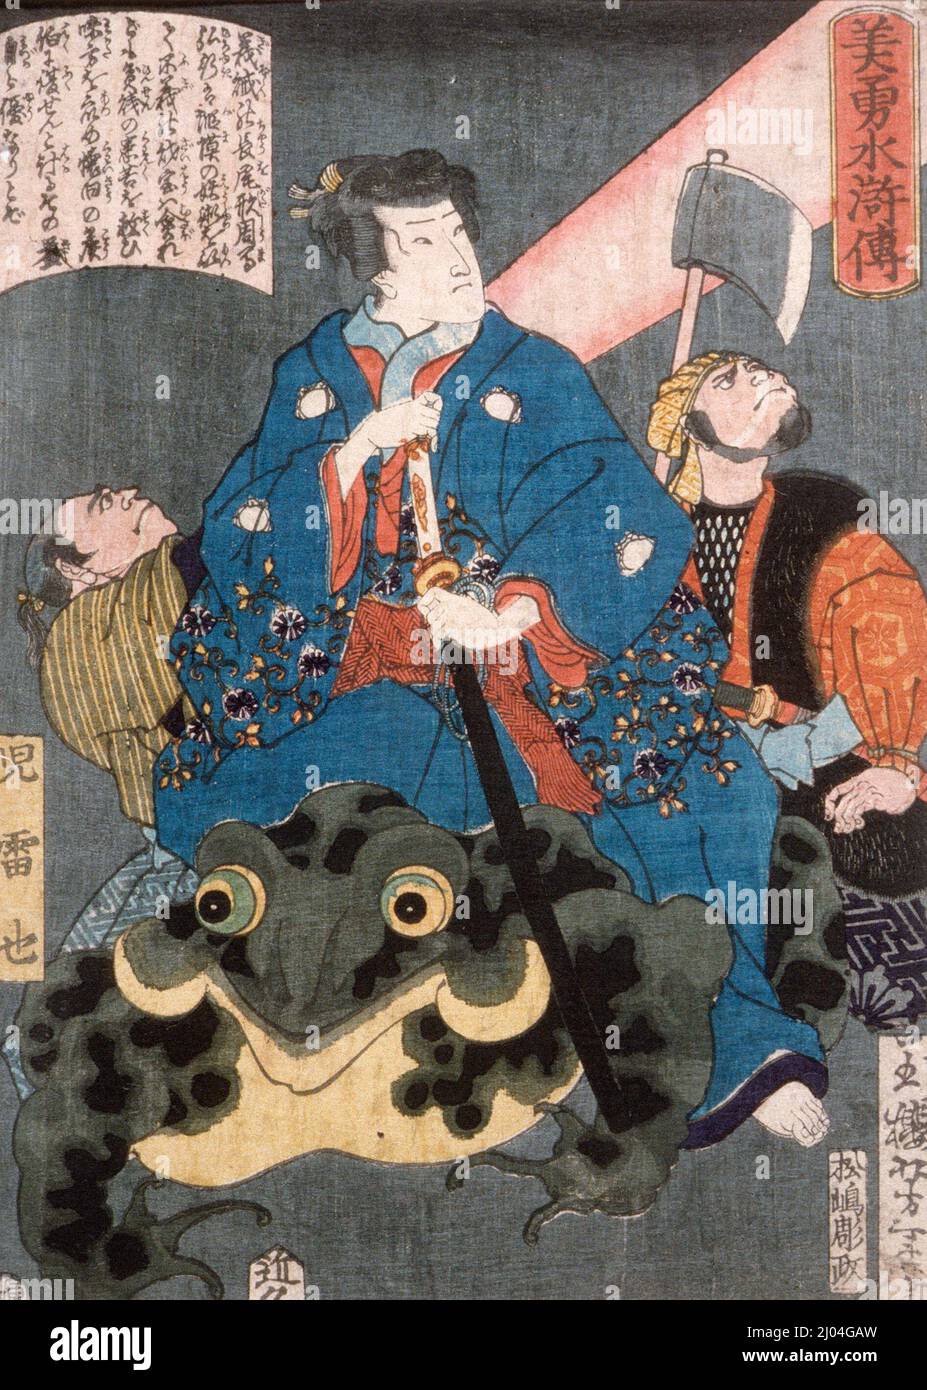 Jiraiya montando una rana. Tsukioka Yoshitoshi (Japón, 1839-1892). Japón, 1866, 4th meses. Impresiones; bloques de madera. Estampado de bloques de madera en color Foto de stock